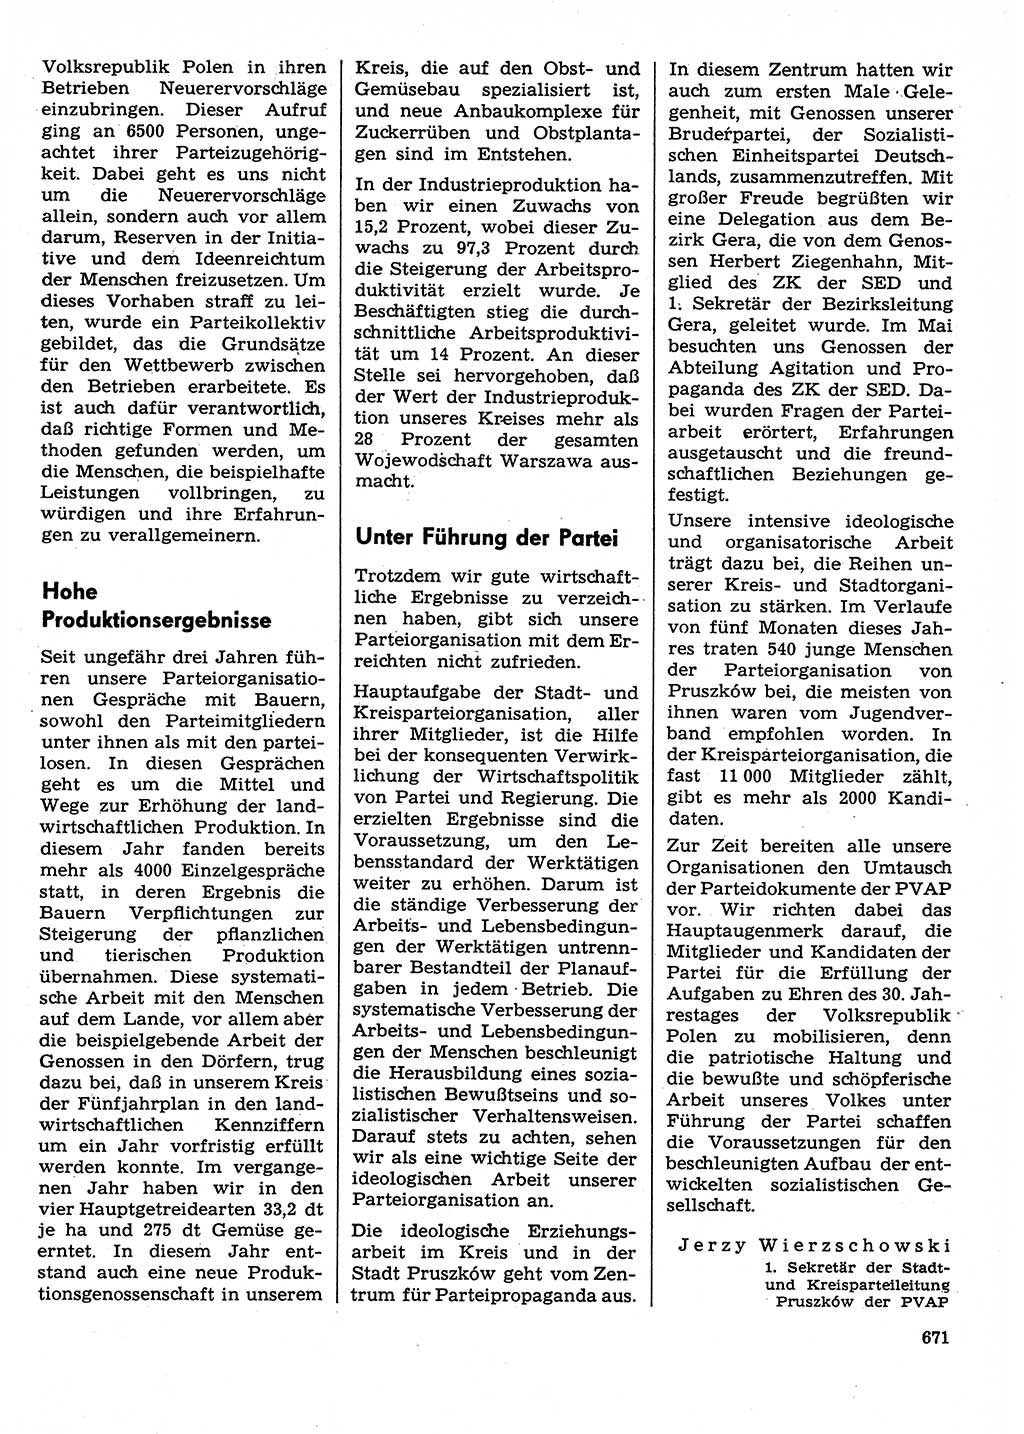 Neuer Weg (NW), Organ des Zentralkomitees (ZK) der SED (Sozialistische Einheitspartei Deutschlands) für Fragen des Parteilebens, 29. Jahrgang [Deutsche Demokratische Republik (DDR)] 1974, Seite 671 (NW ZK SED DDR 1974, S. 671)